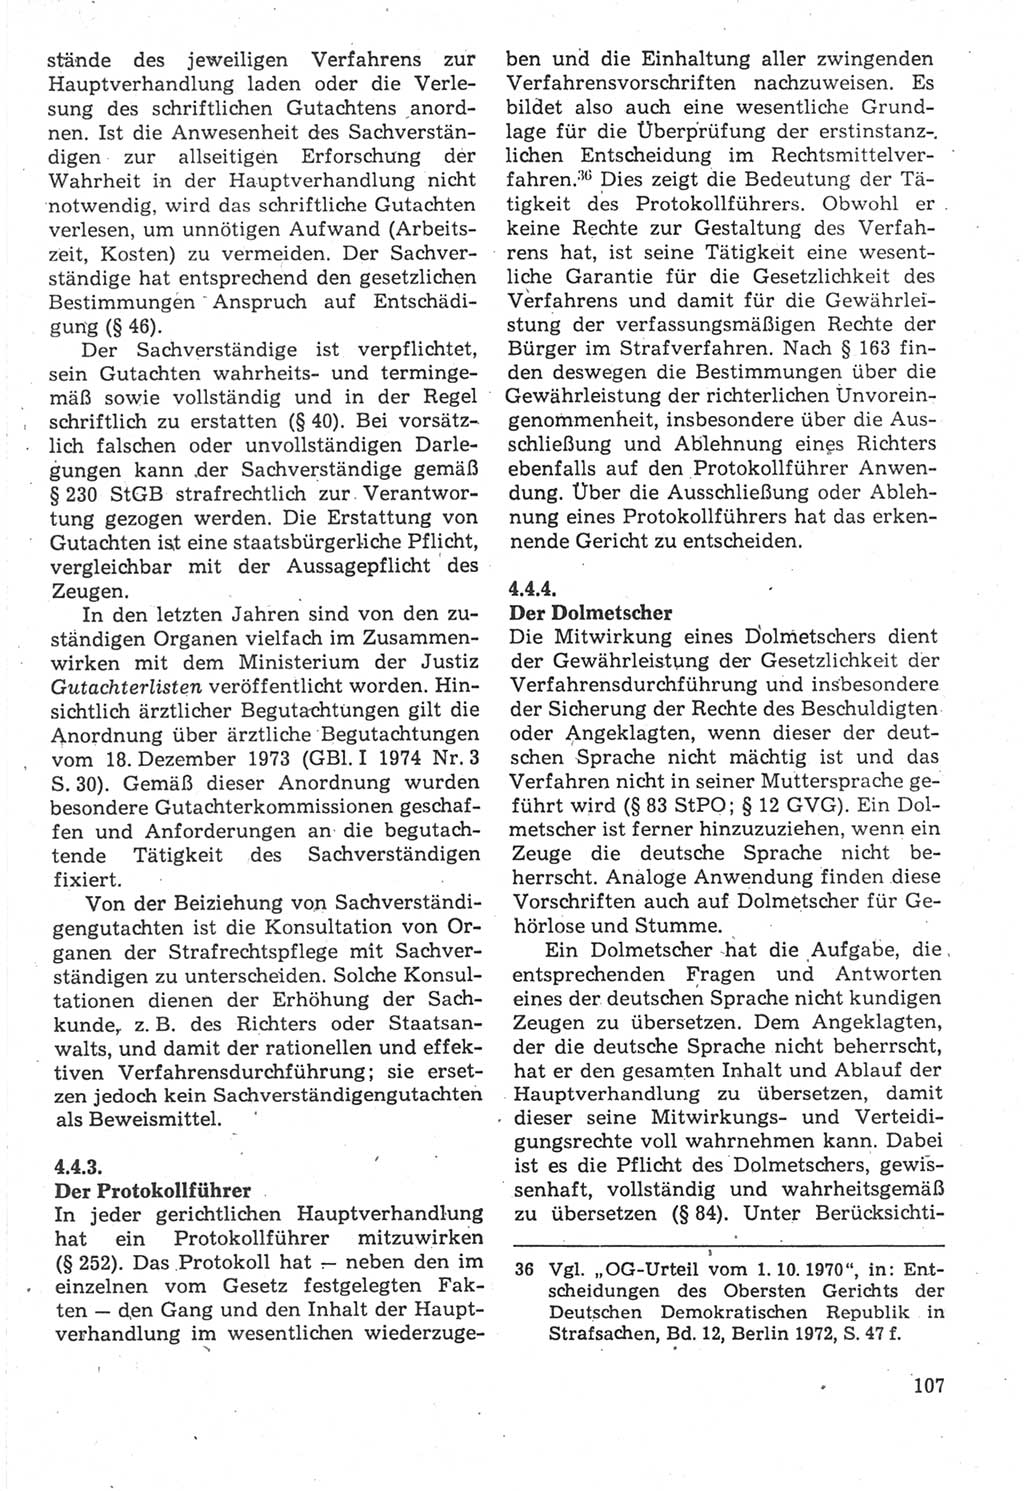 Strafverfahrensrecht [Deutsche Demokratische Republik (DDR)], Lehrbuch 1987, Seite 107 (Strafverf.-R. DDR Lb. 1987, S. 107)